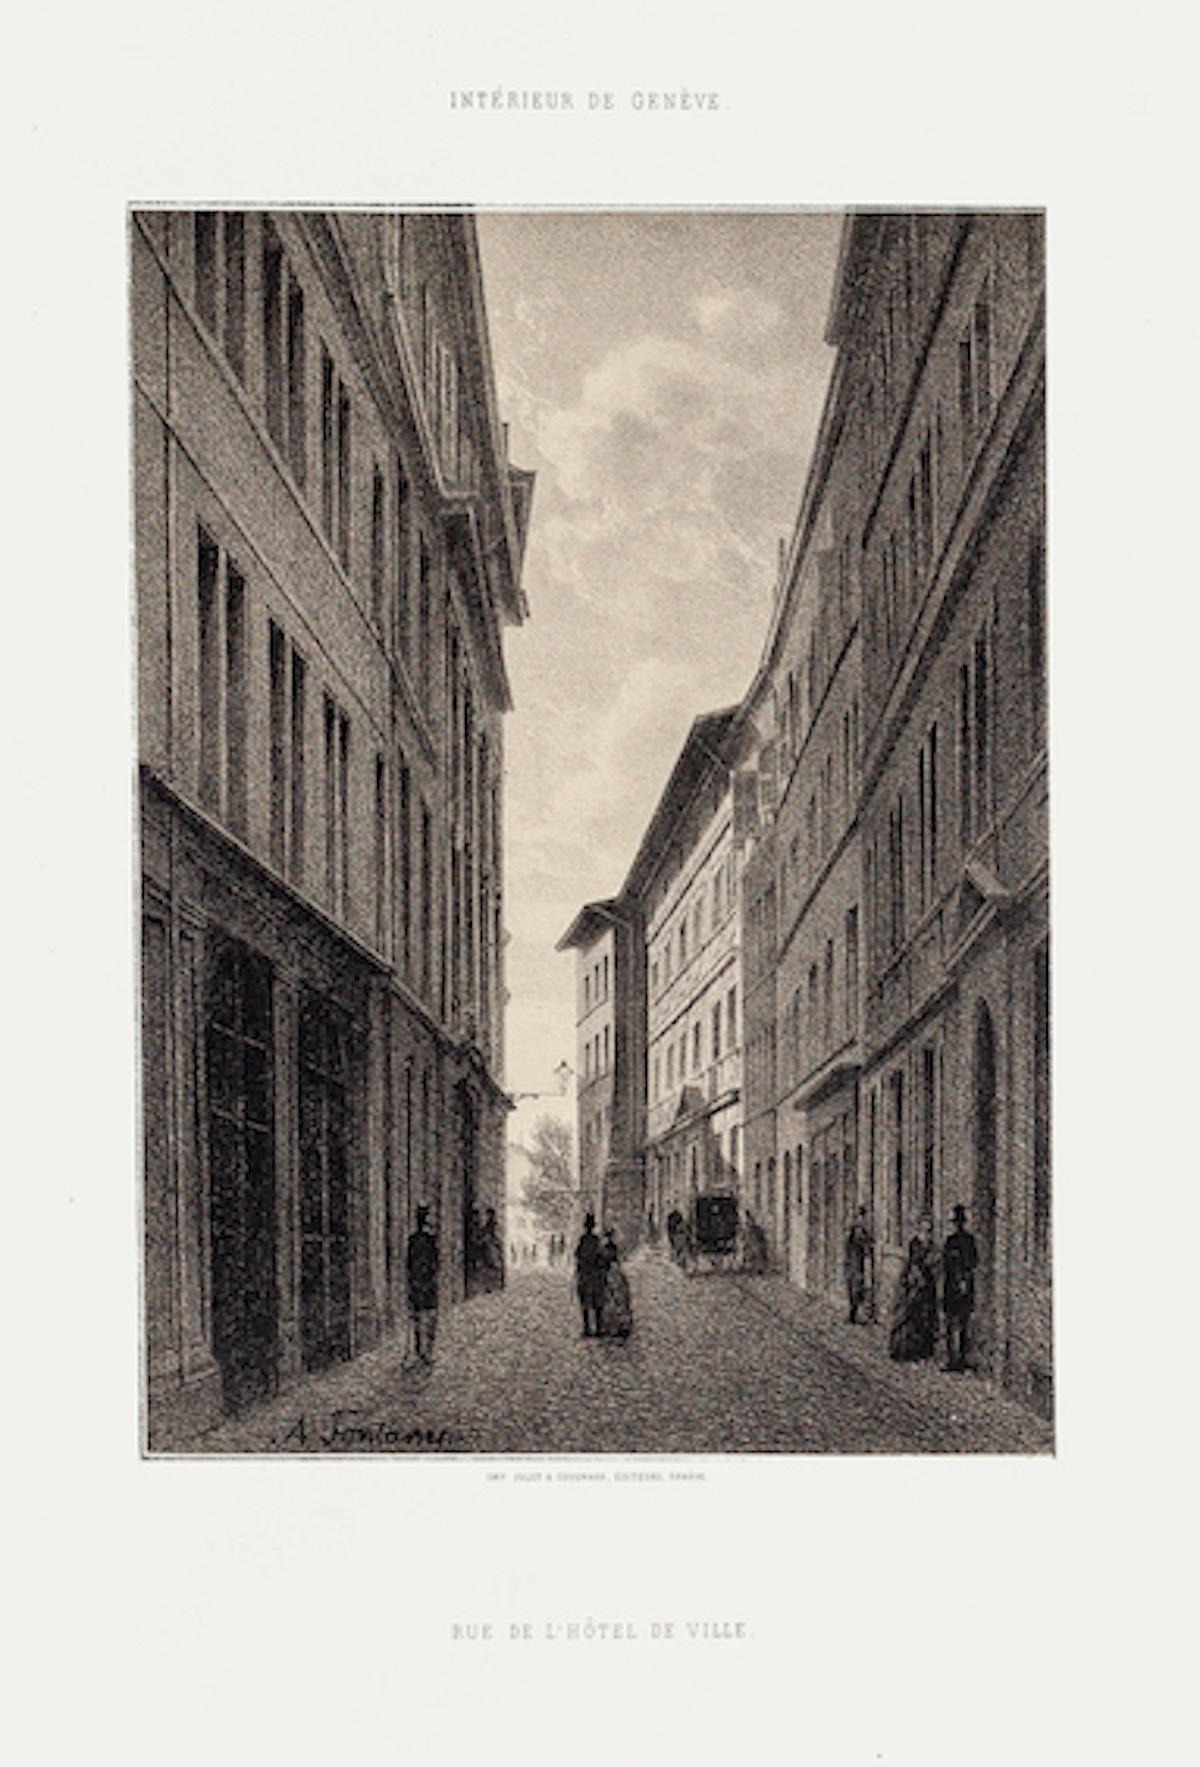 Geneva, Rue De L'Hôtel De Ville - Lithograph by A. Fontanesi - 1854